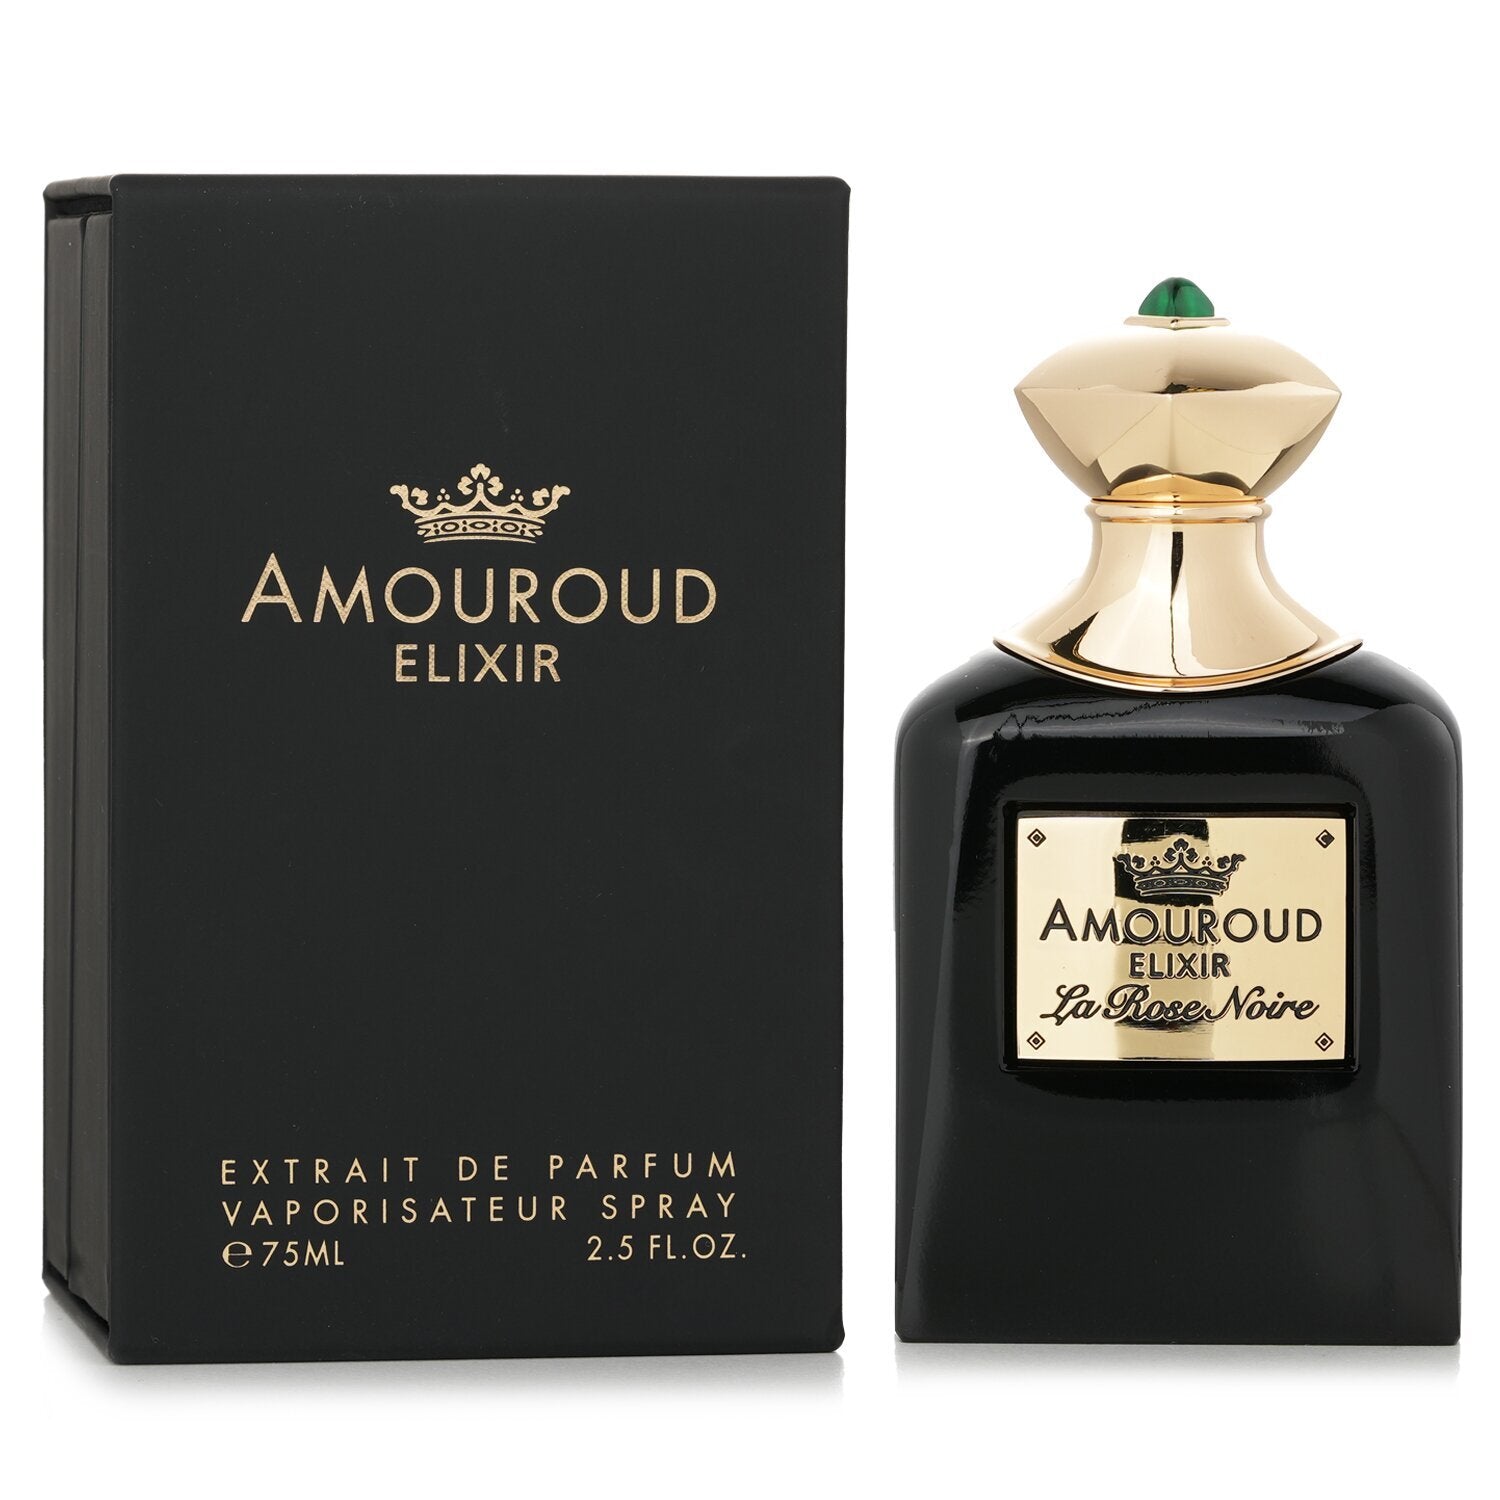 Amouroud La Rose Noire Extrait De Parfum M 75ml Boxed